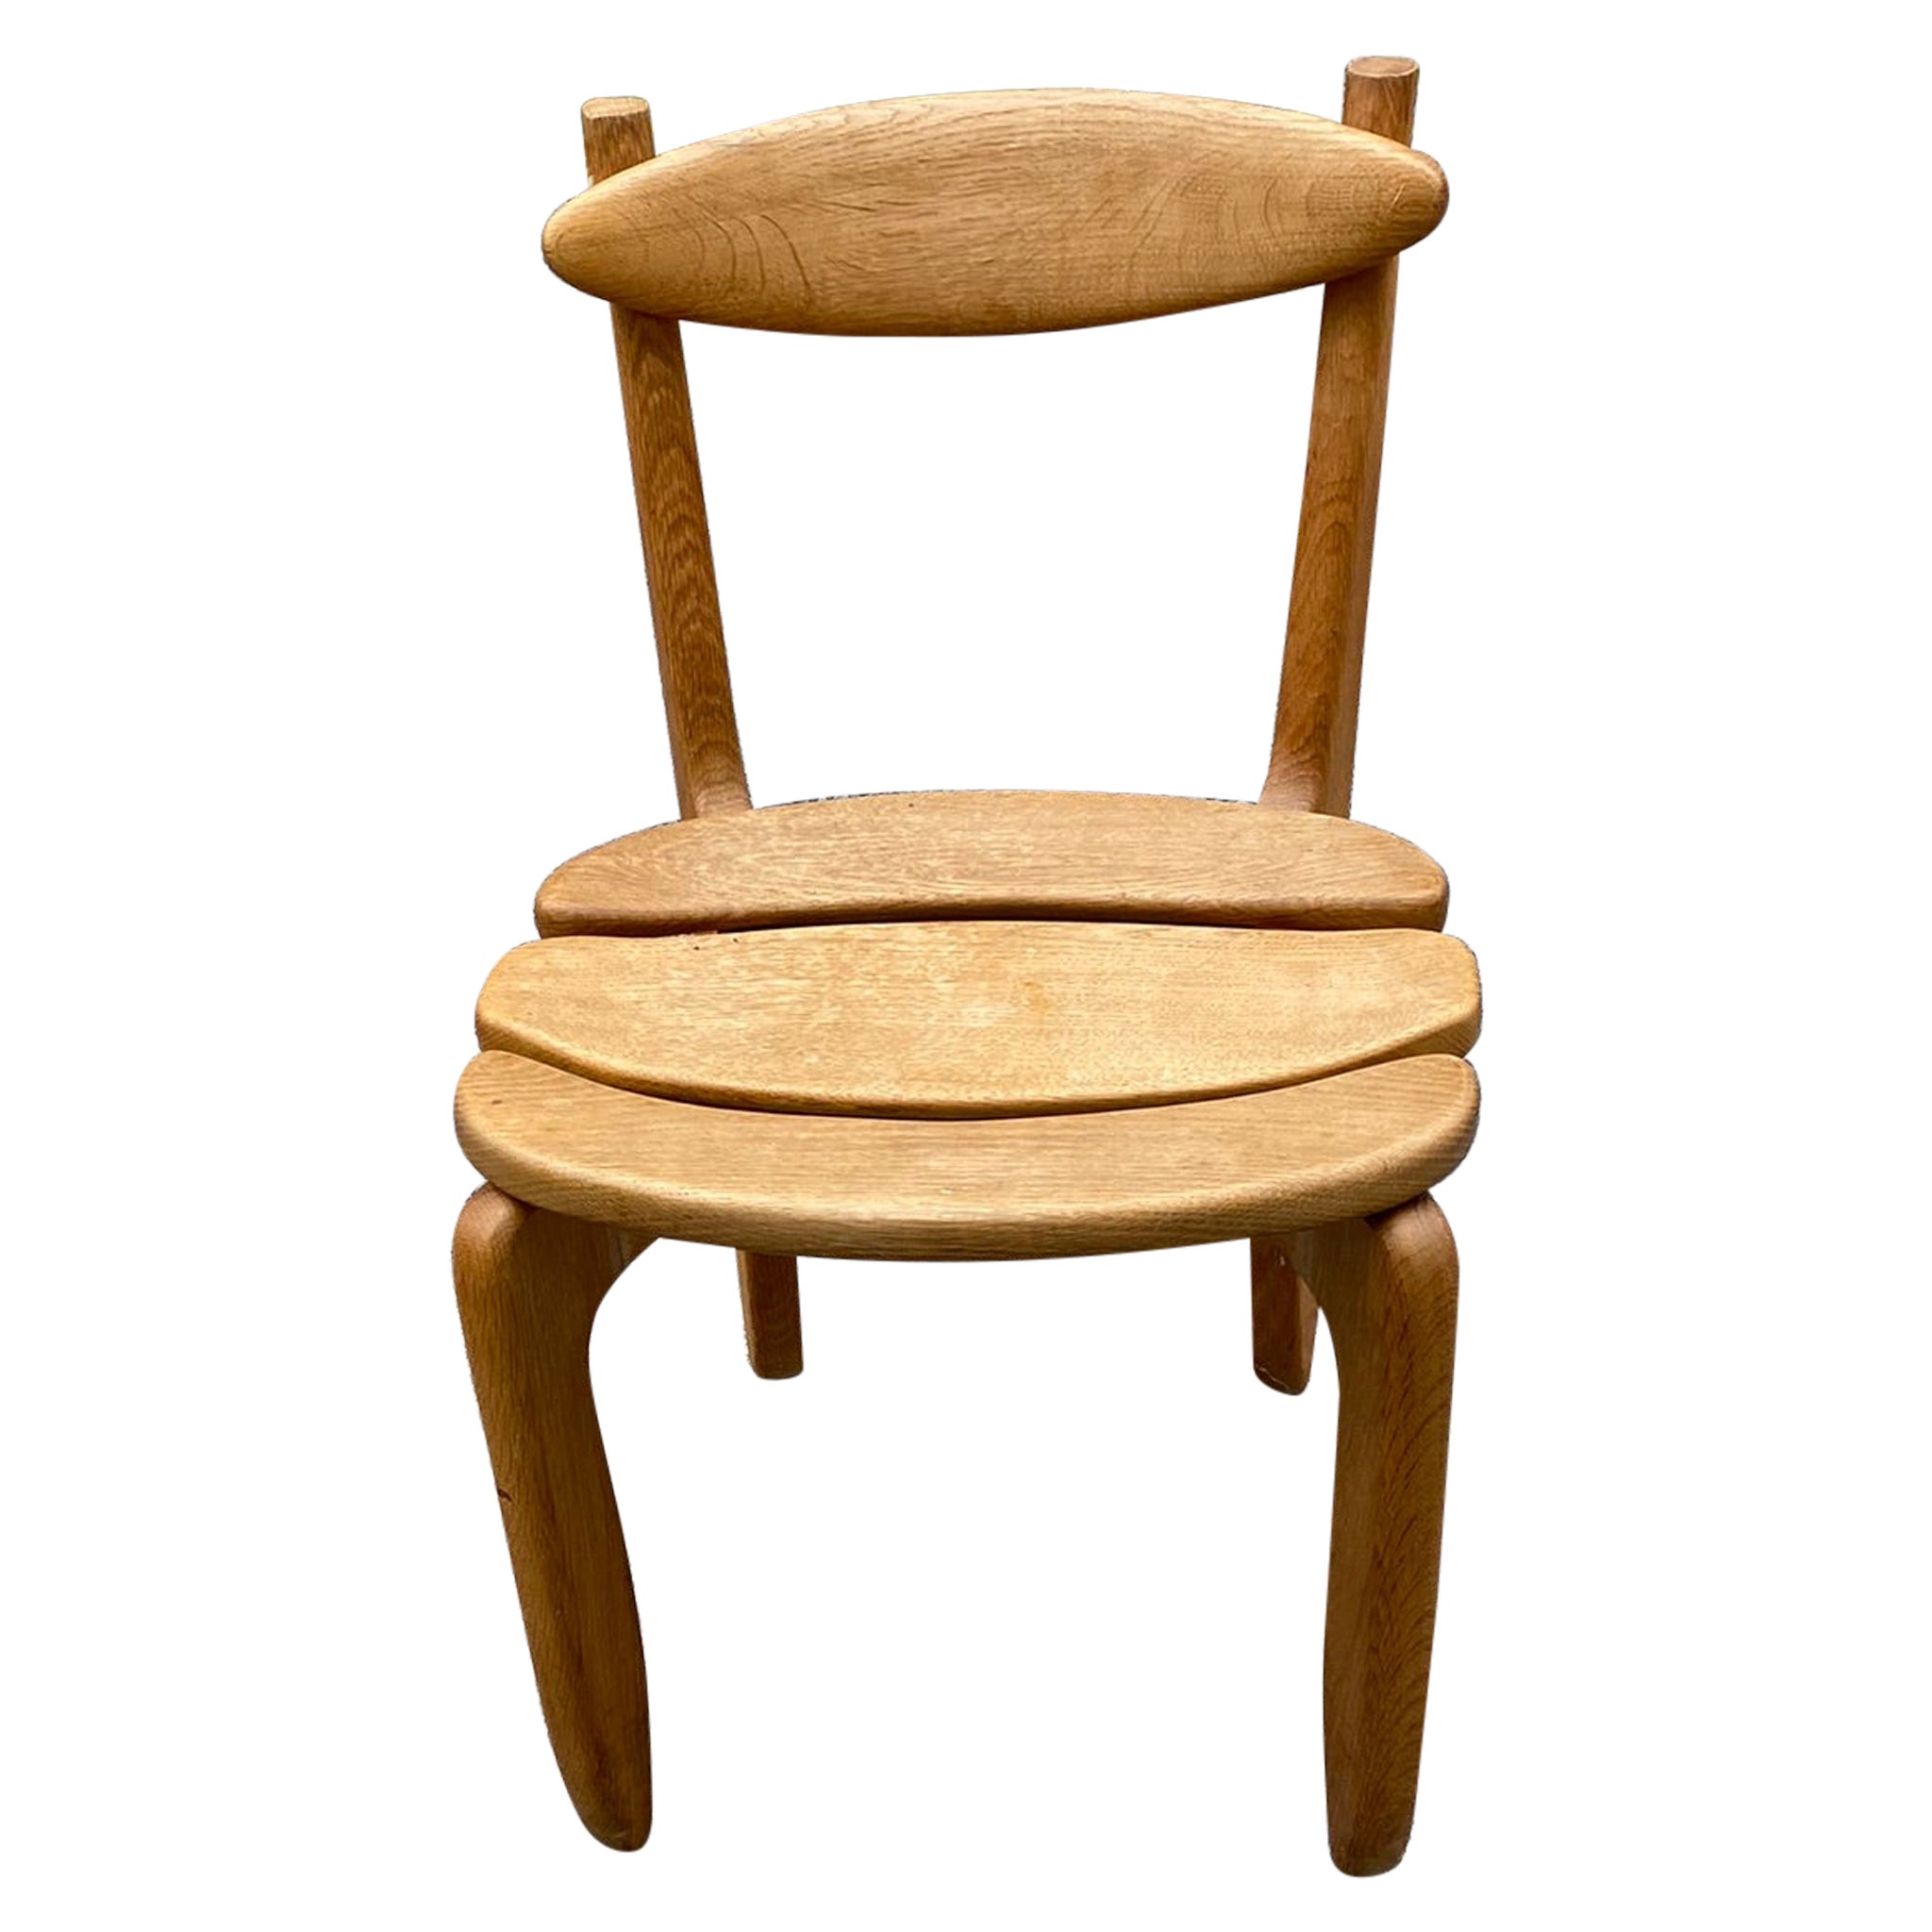 Guillerme et Chambron, "Thierry" Chair in Solid Oak, Edition Votre Maison 1970